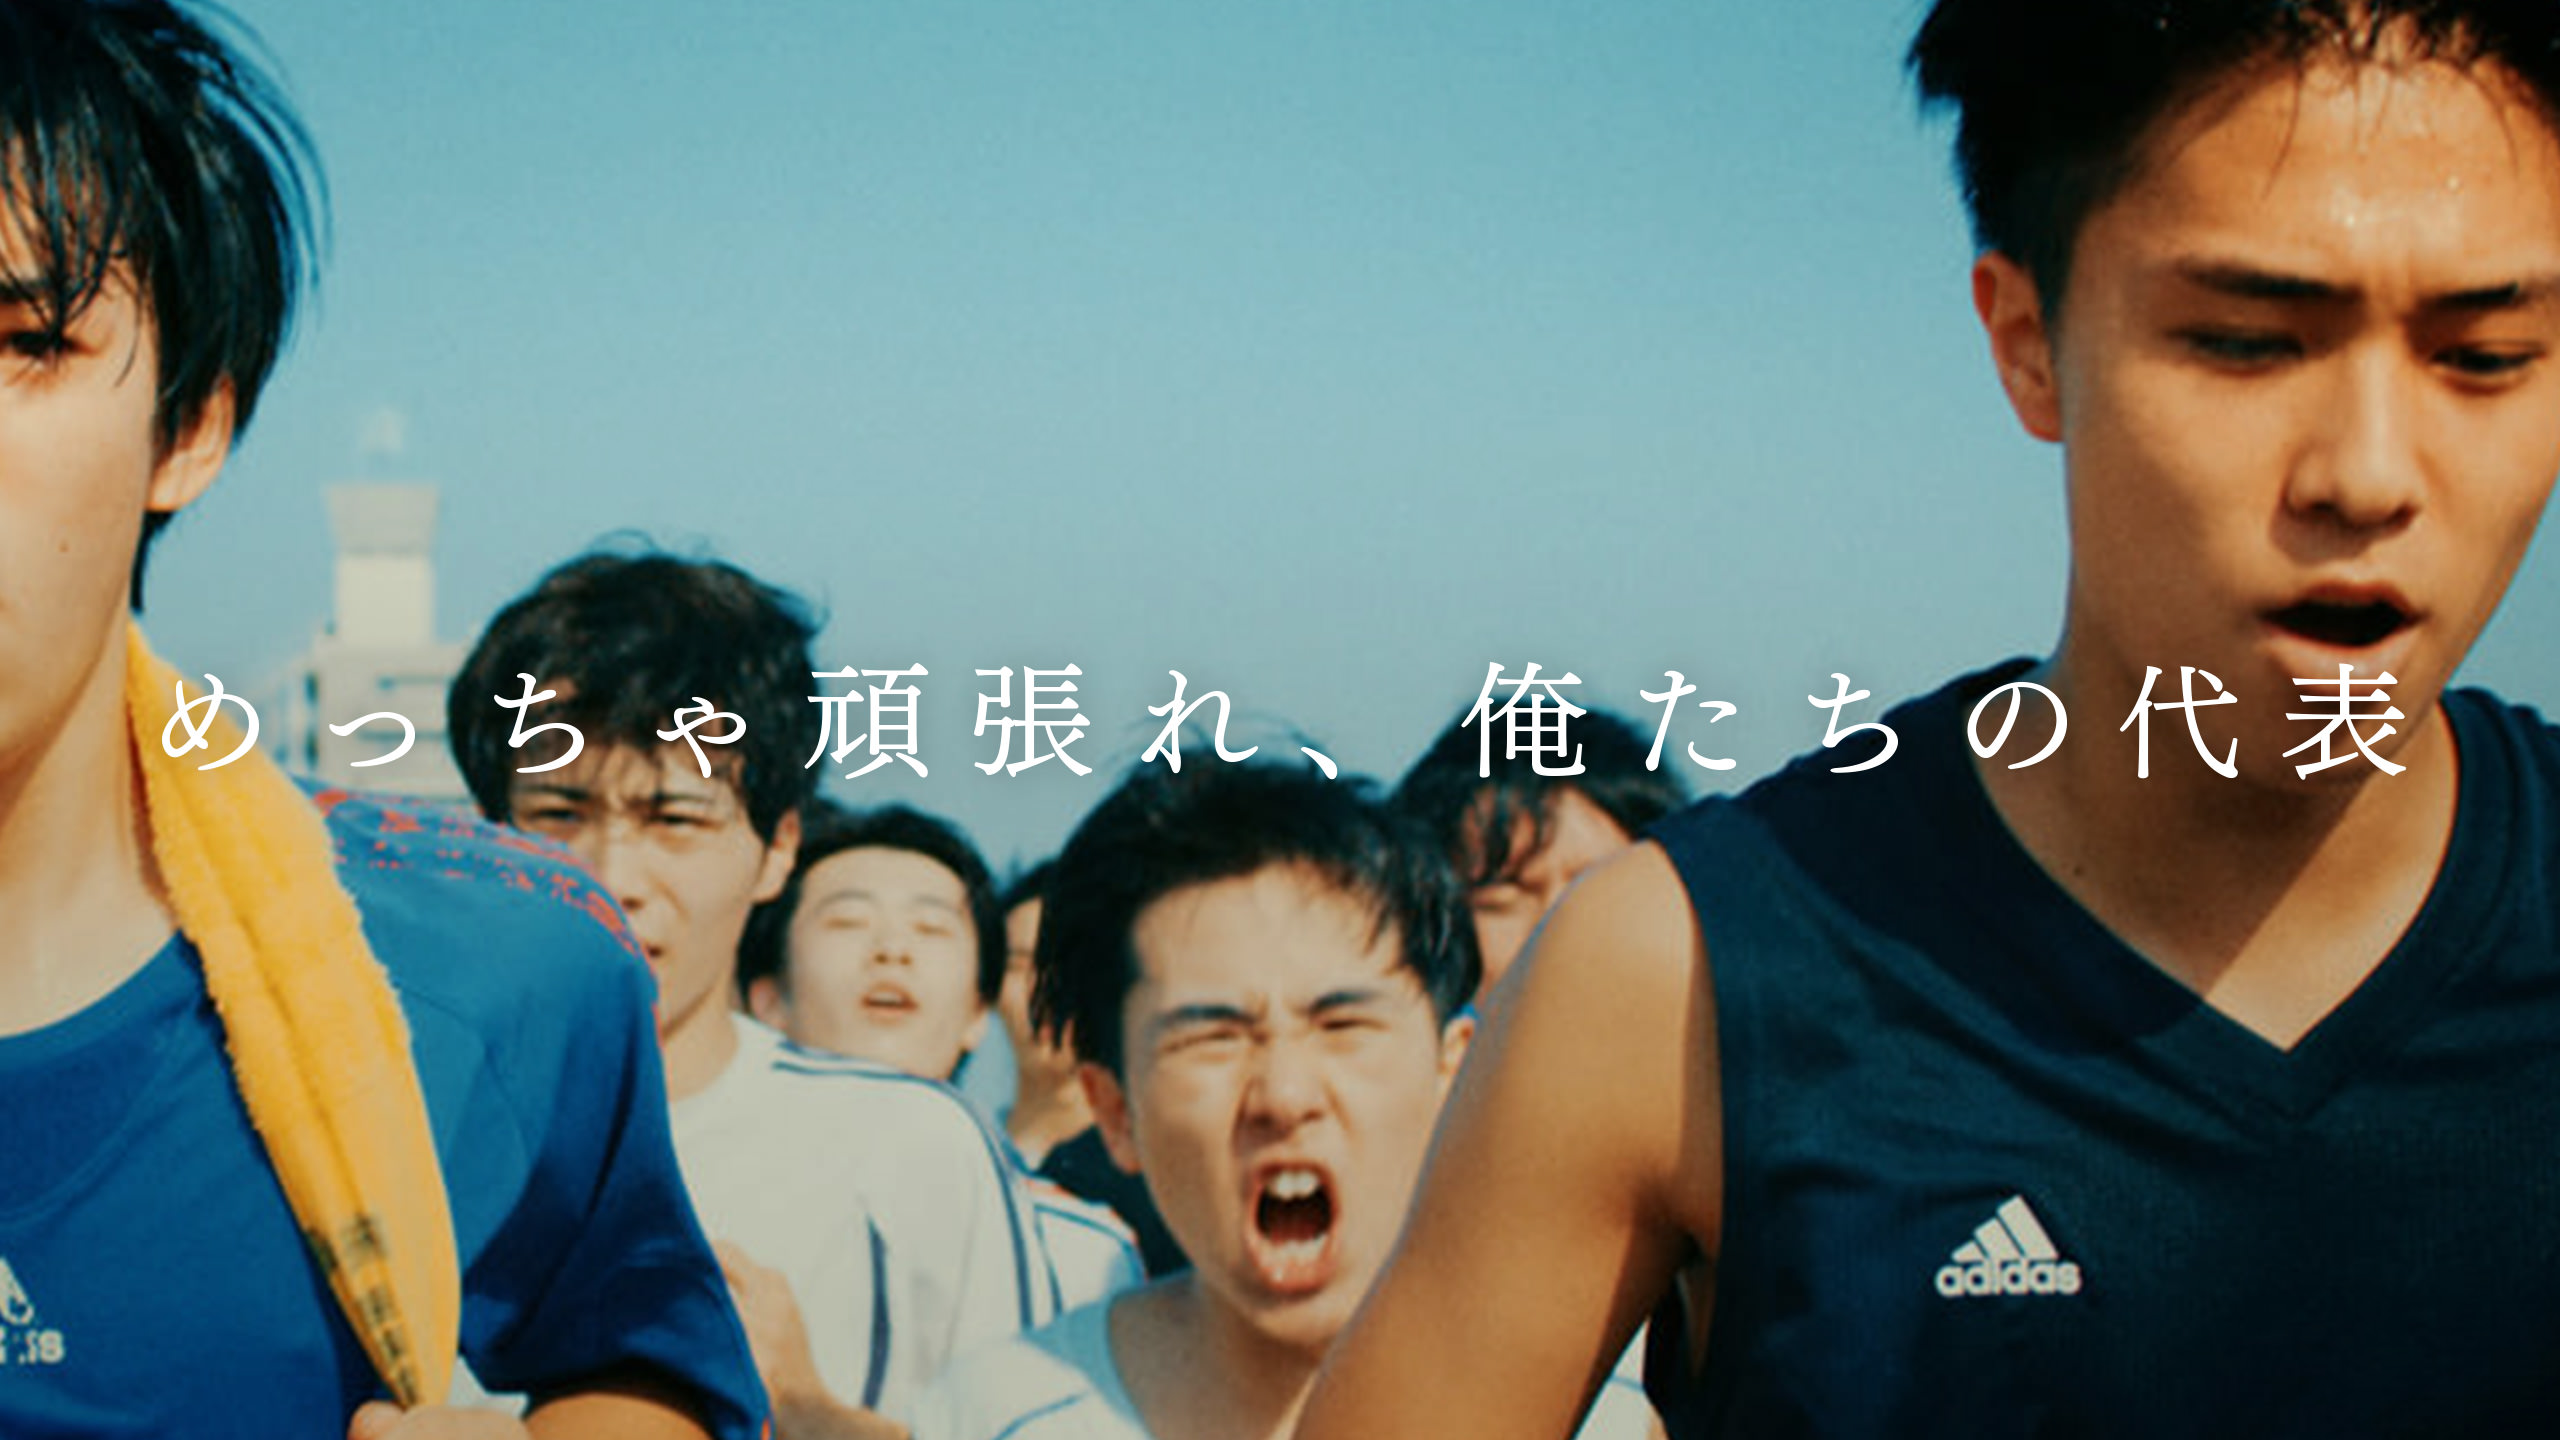 KIRIN サッカー日本代表応援ムービー「俺たち、めっちゃ」